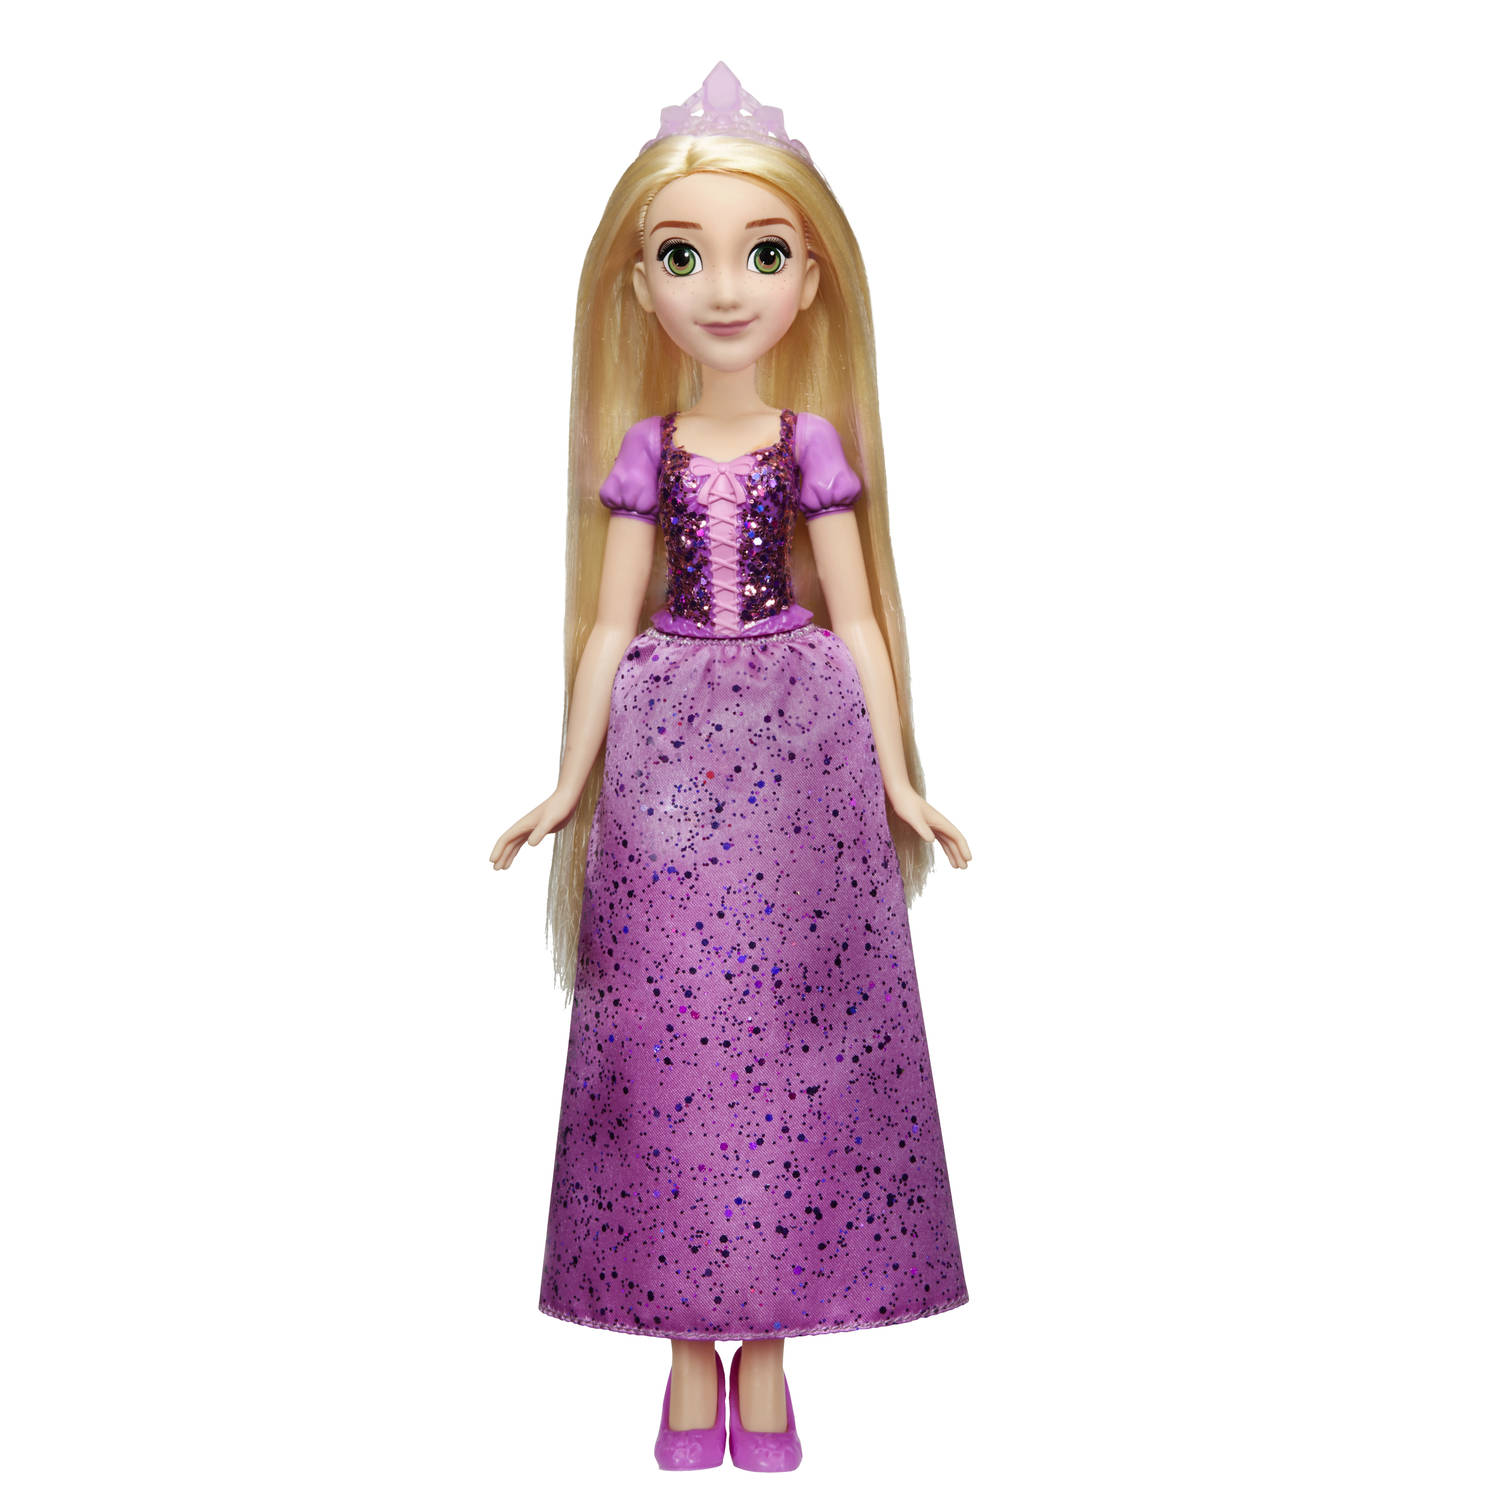 redactioneel Blind Huh Disney Princess royal shimmer pop Rapunzel | Blokker